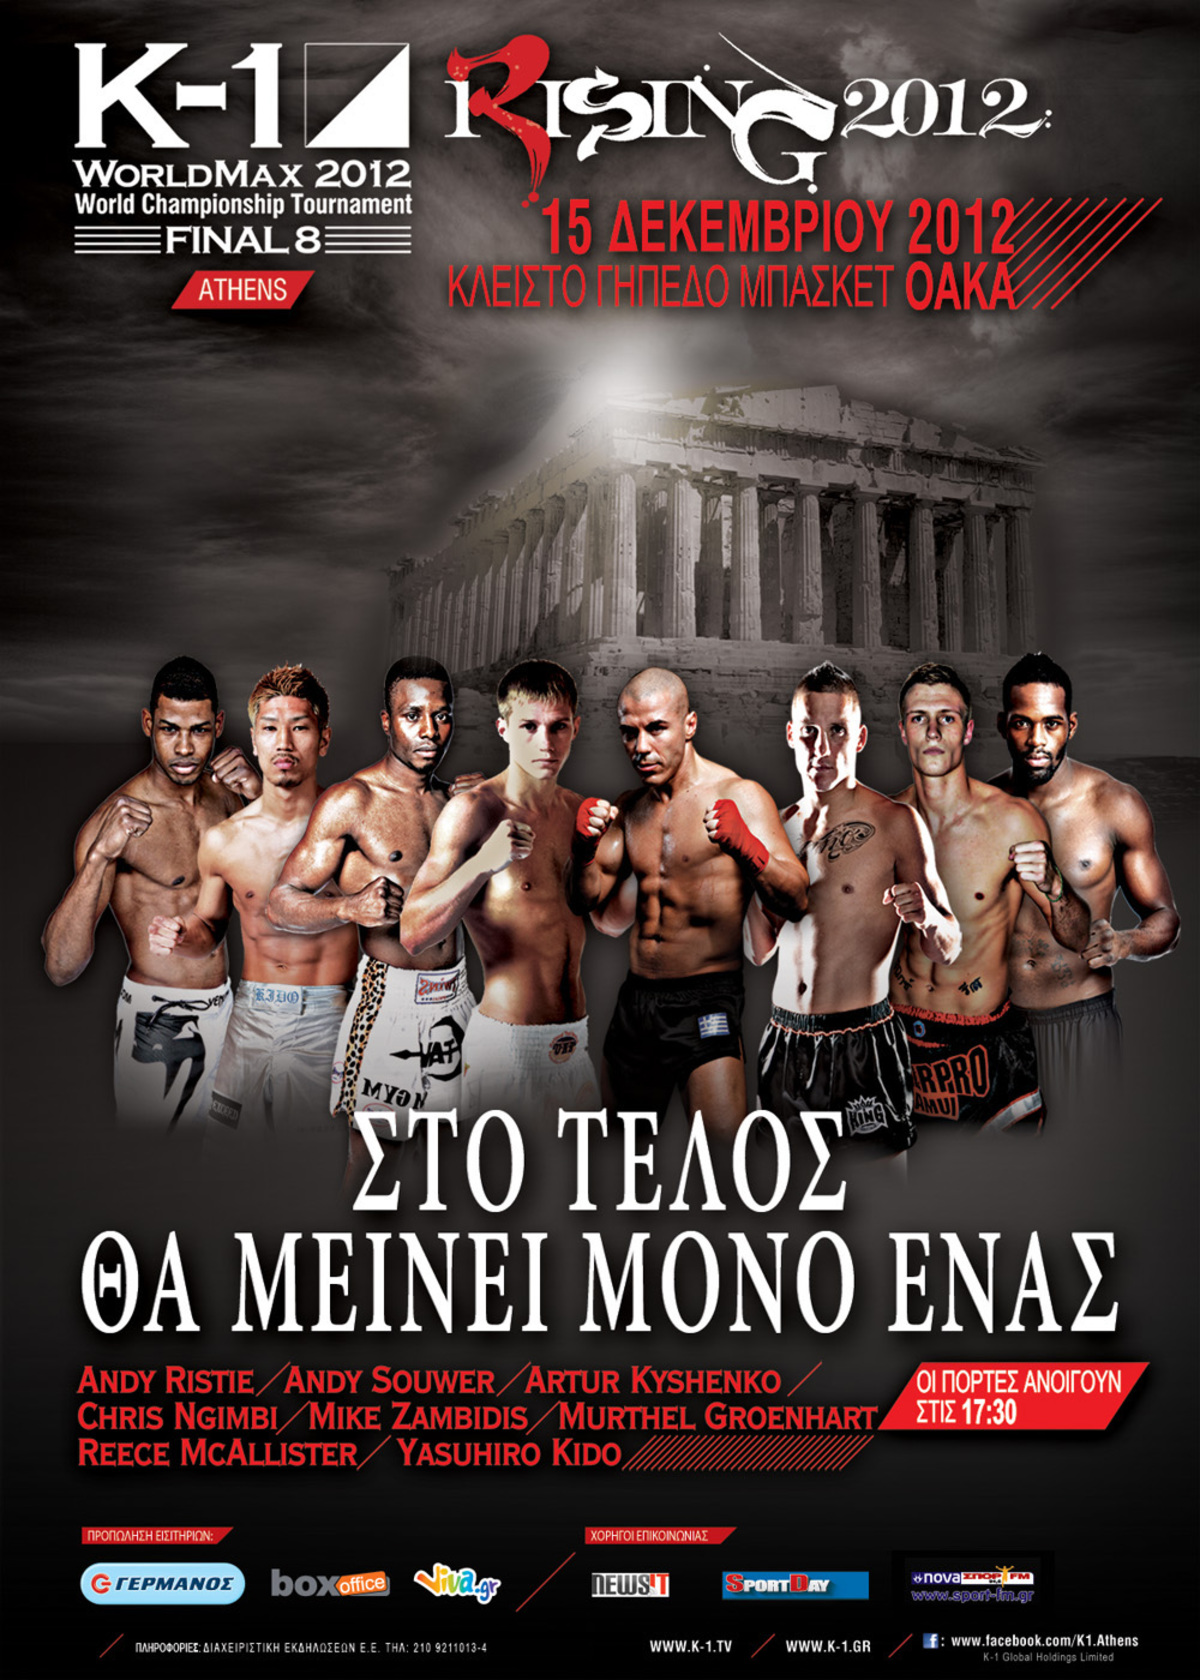 Το Κ-1, η Ολυμπιάδα του Kick Boxing, έρχεται στην Ελλάδα!